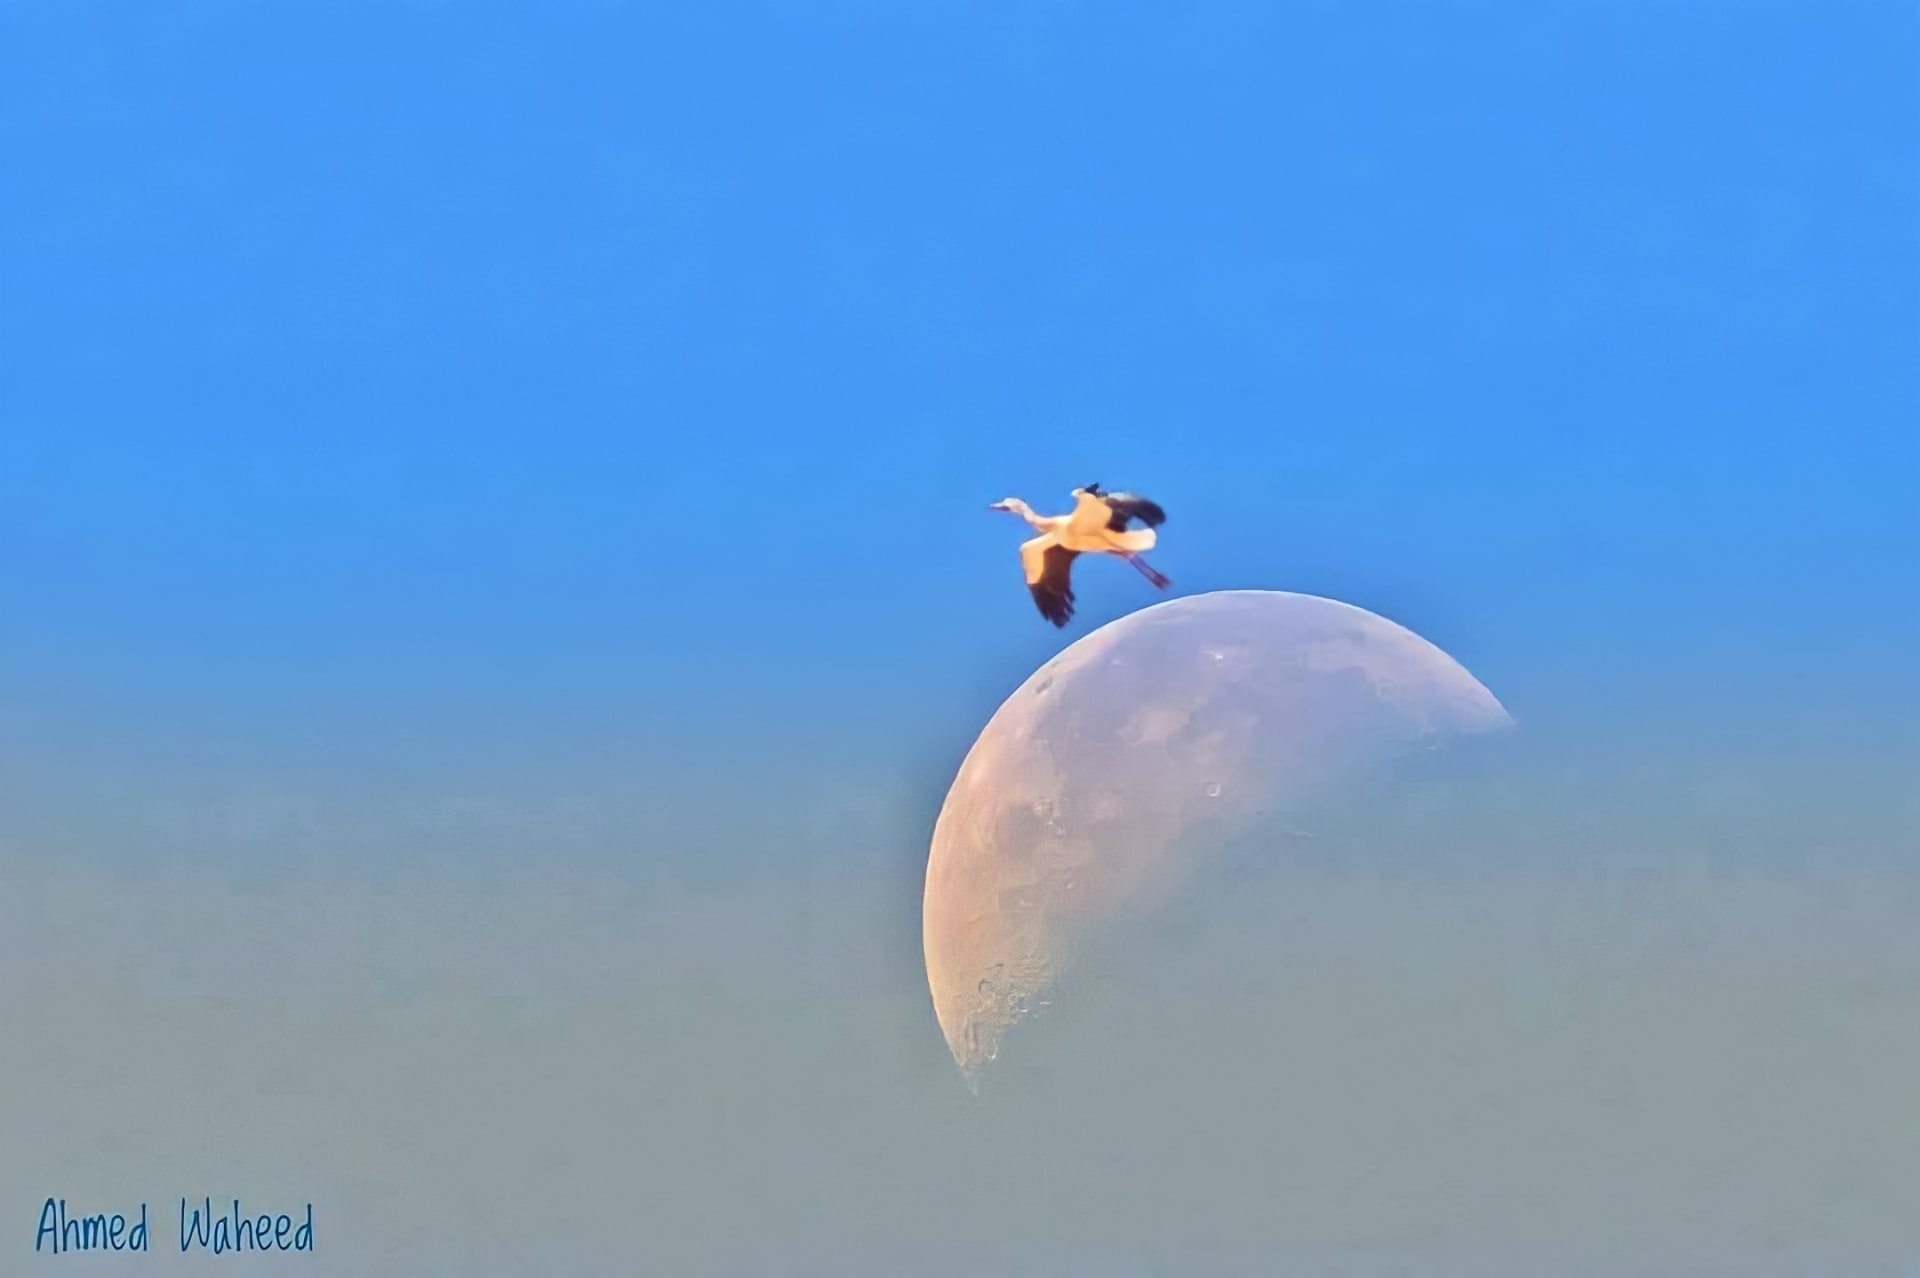 "يقفز من على حافة القمر"... مصري يوثق مشهدًا عجيبًا في سماء مدينة شرم الشيخ